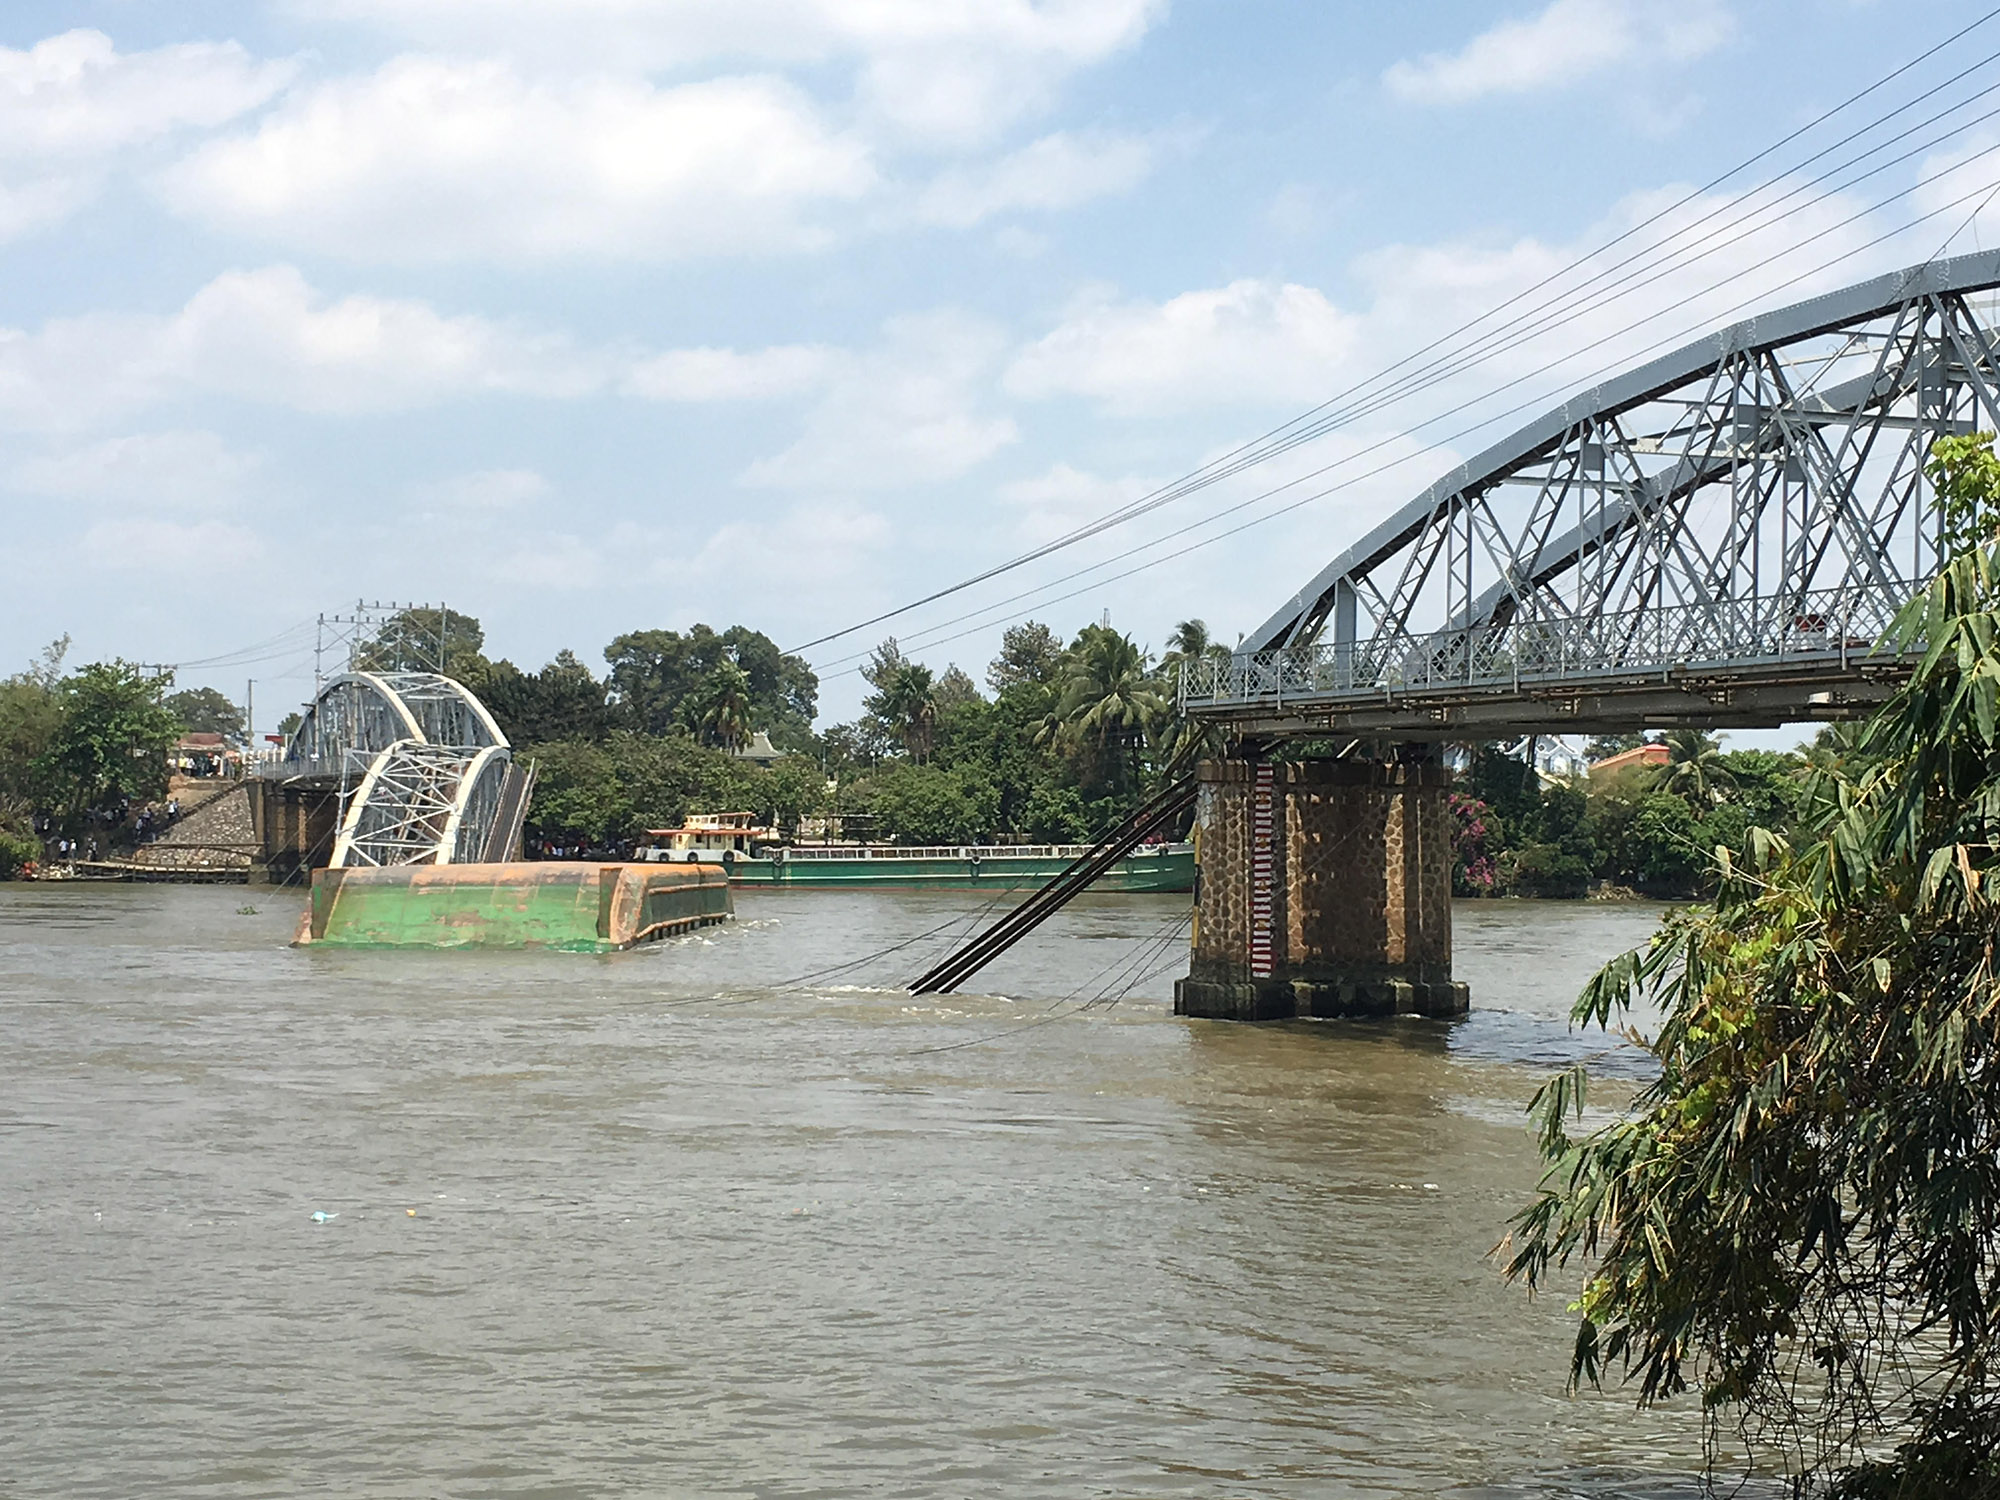 Không ít người dân Biên Hòa - Đồng Nai tiếc nuối cây cầu trăm tuổi bị sà lan tông đổ 2 nhịp cầu Ghềnh từng đi vào nhạc họa, thơ văn - Ảnh: Xuân Đức